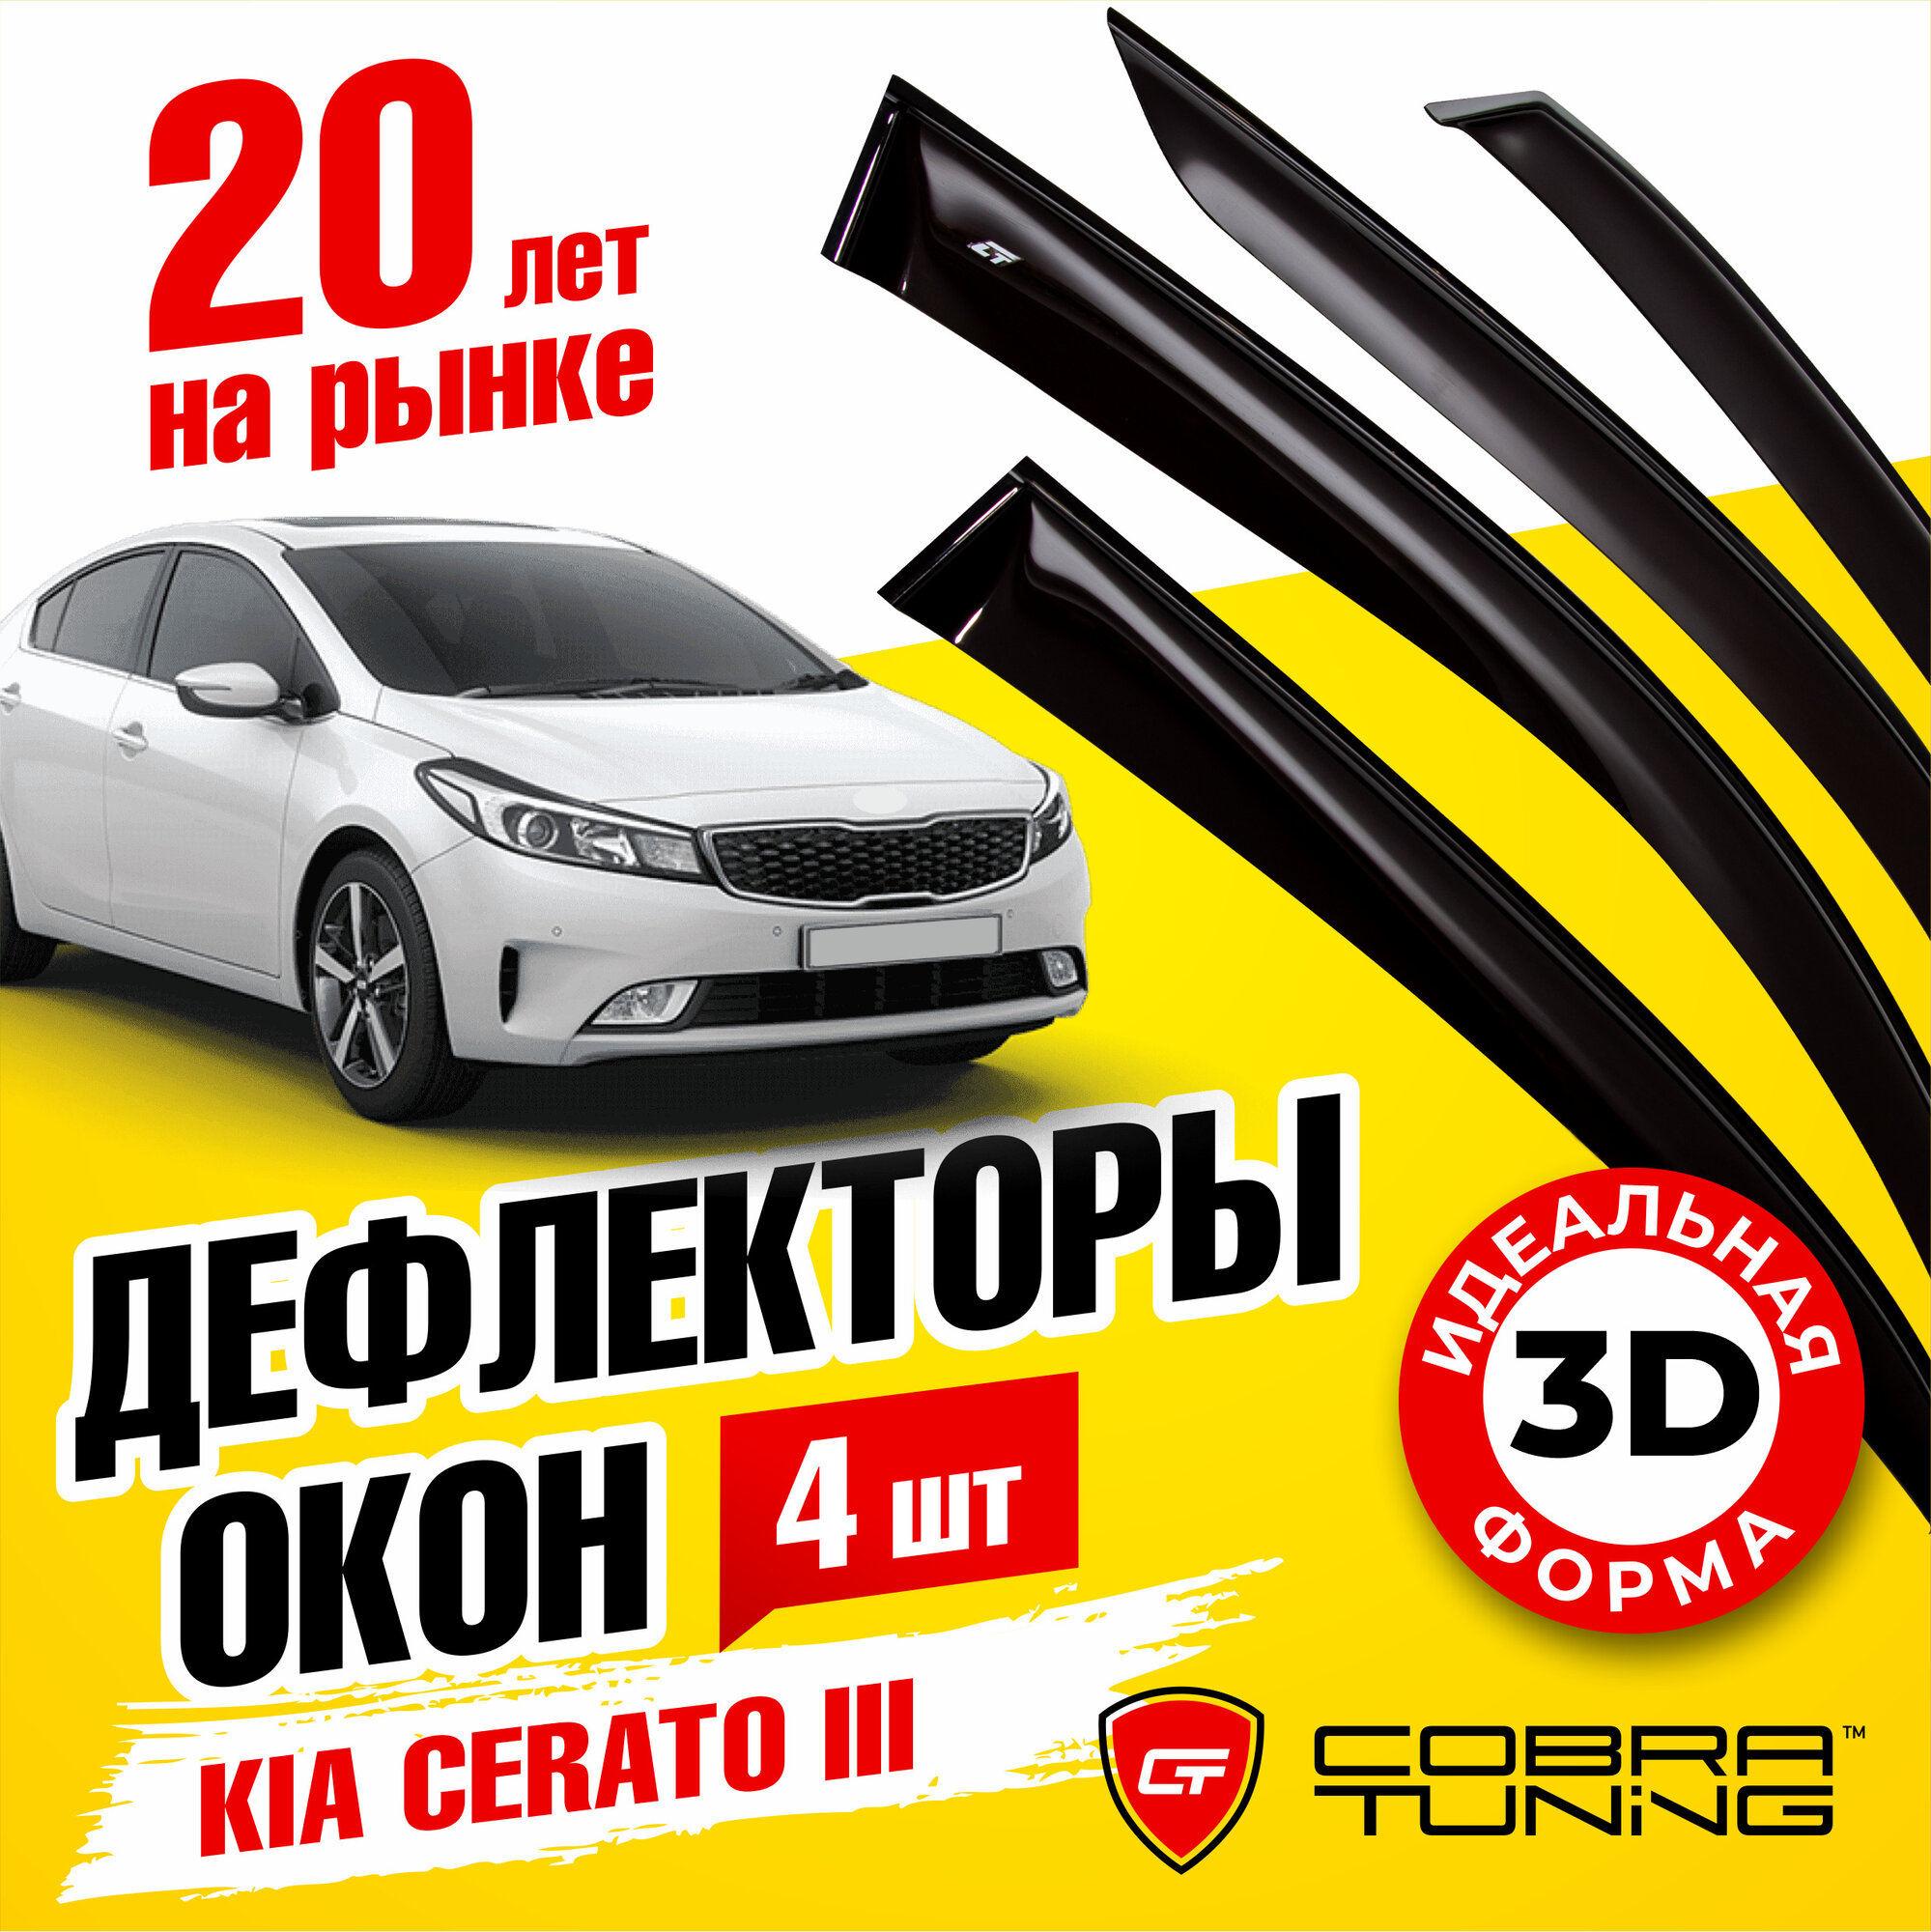 Дефлекторы боковых окон для Киа Церато 3 седан 2012-2020 ветровики с хром молдингом Cobra Tuning